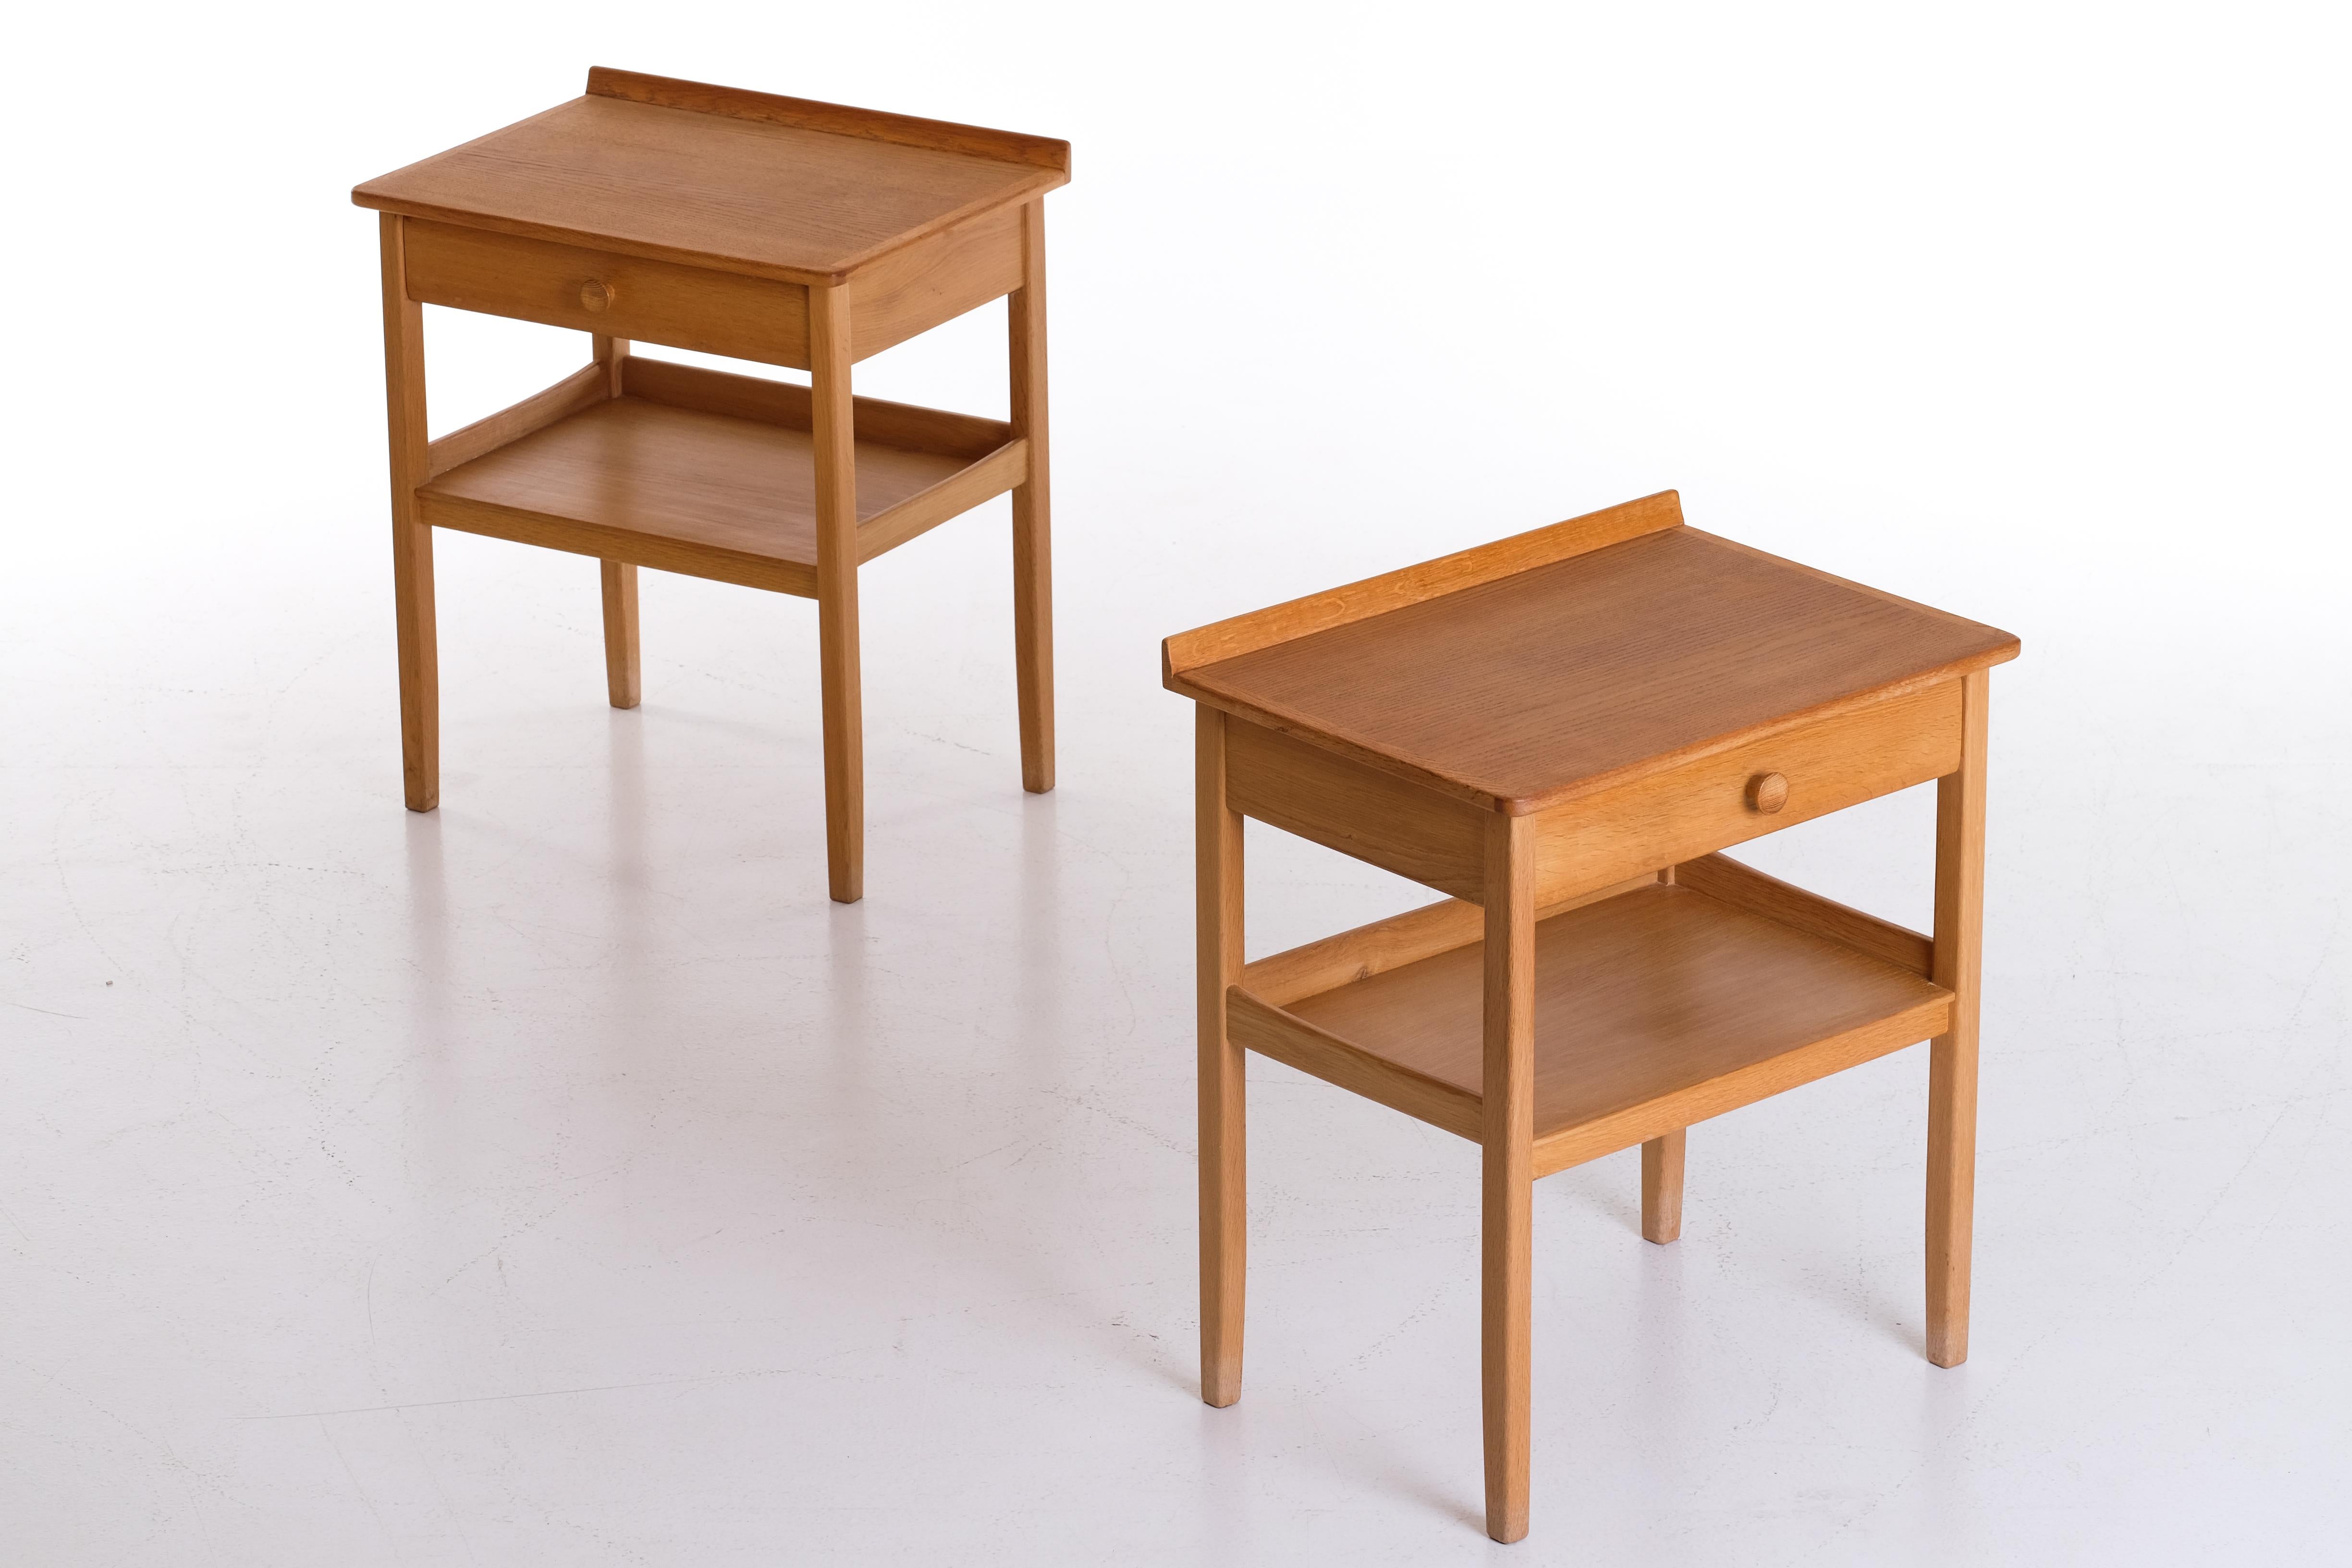 Paire d'élégantes tables de chevet conçues par Carl Malmsten, Suède, années 1960.
Très bon état avec de petits signes d'usage et de patine. Signé. 